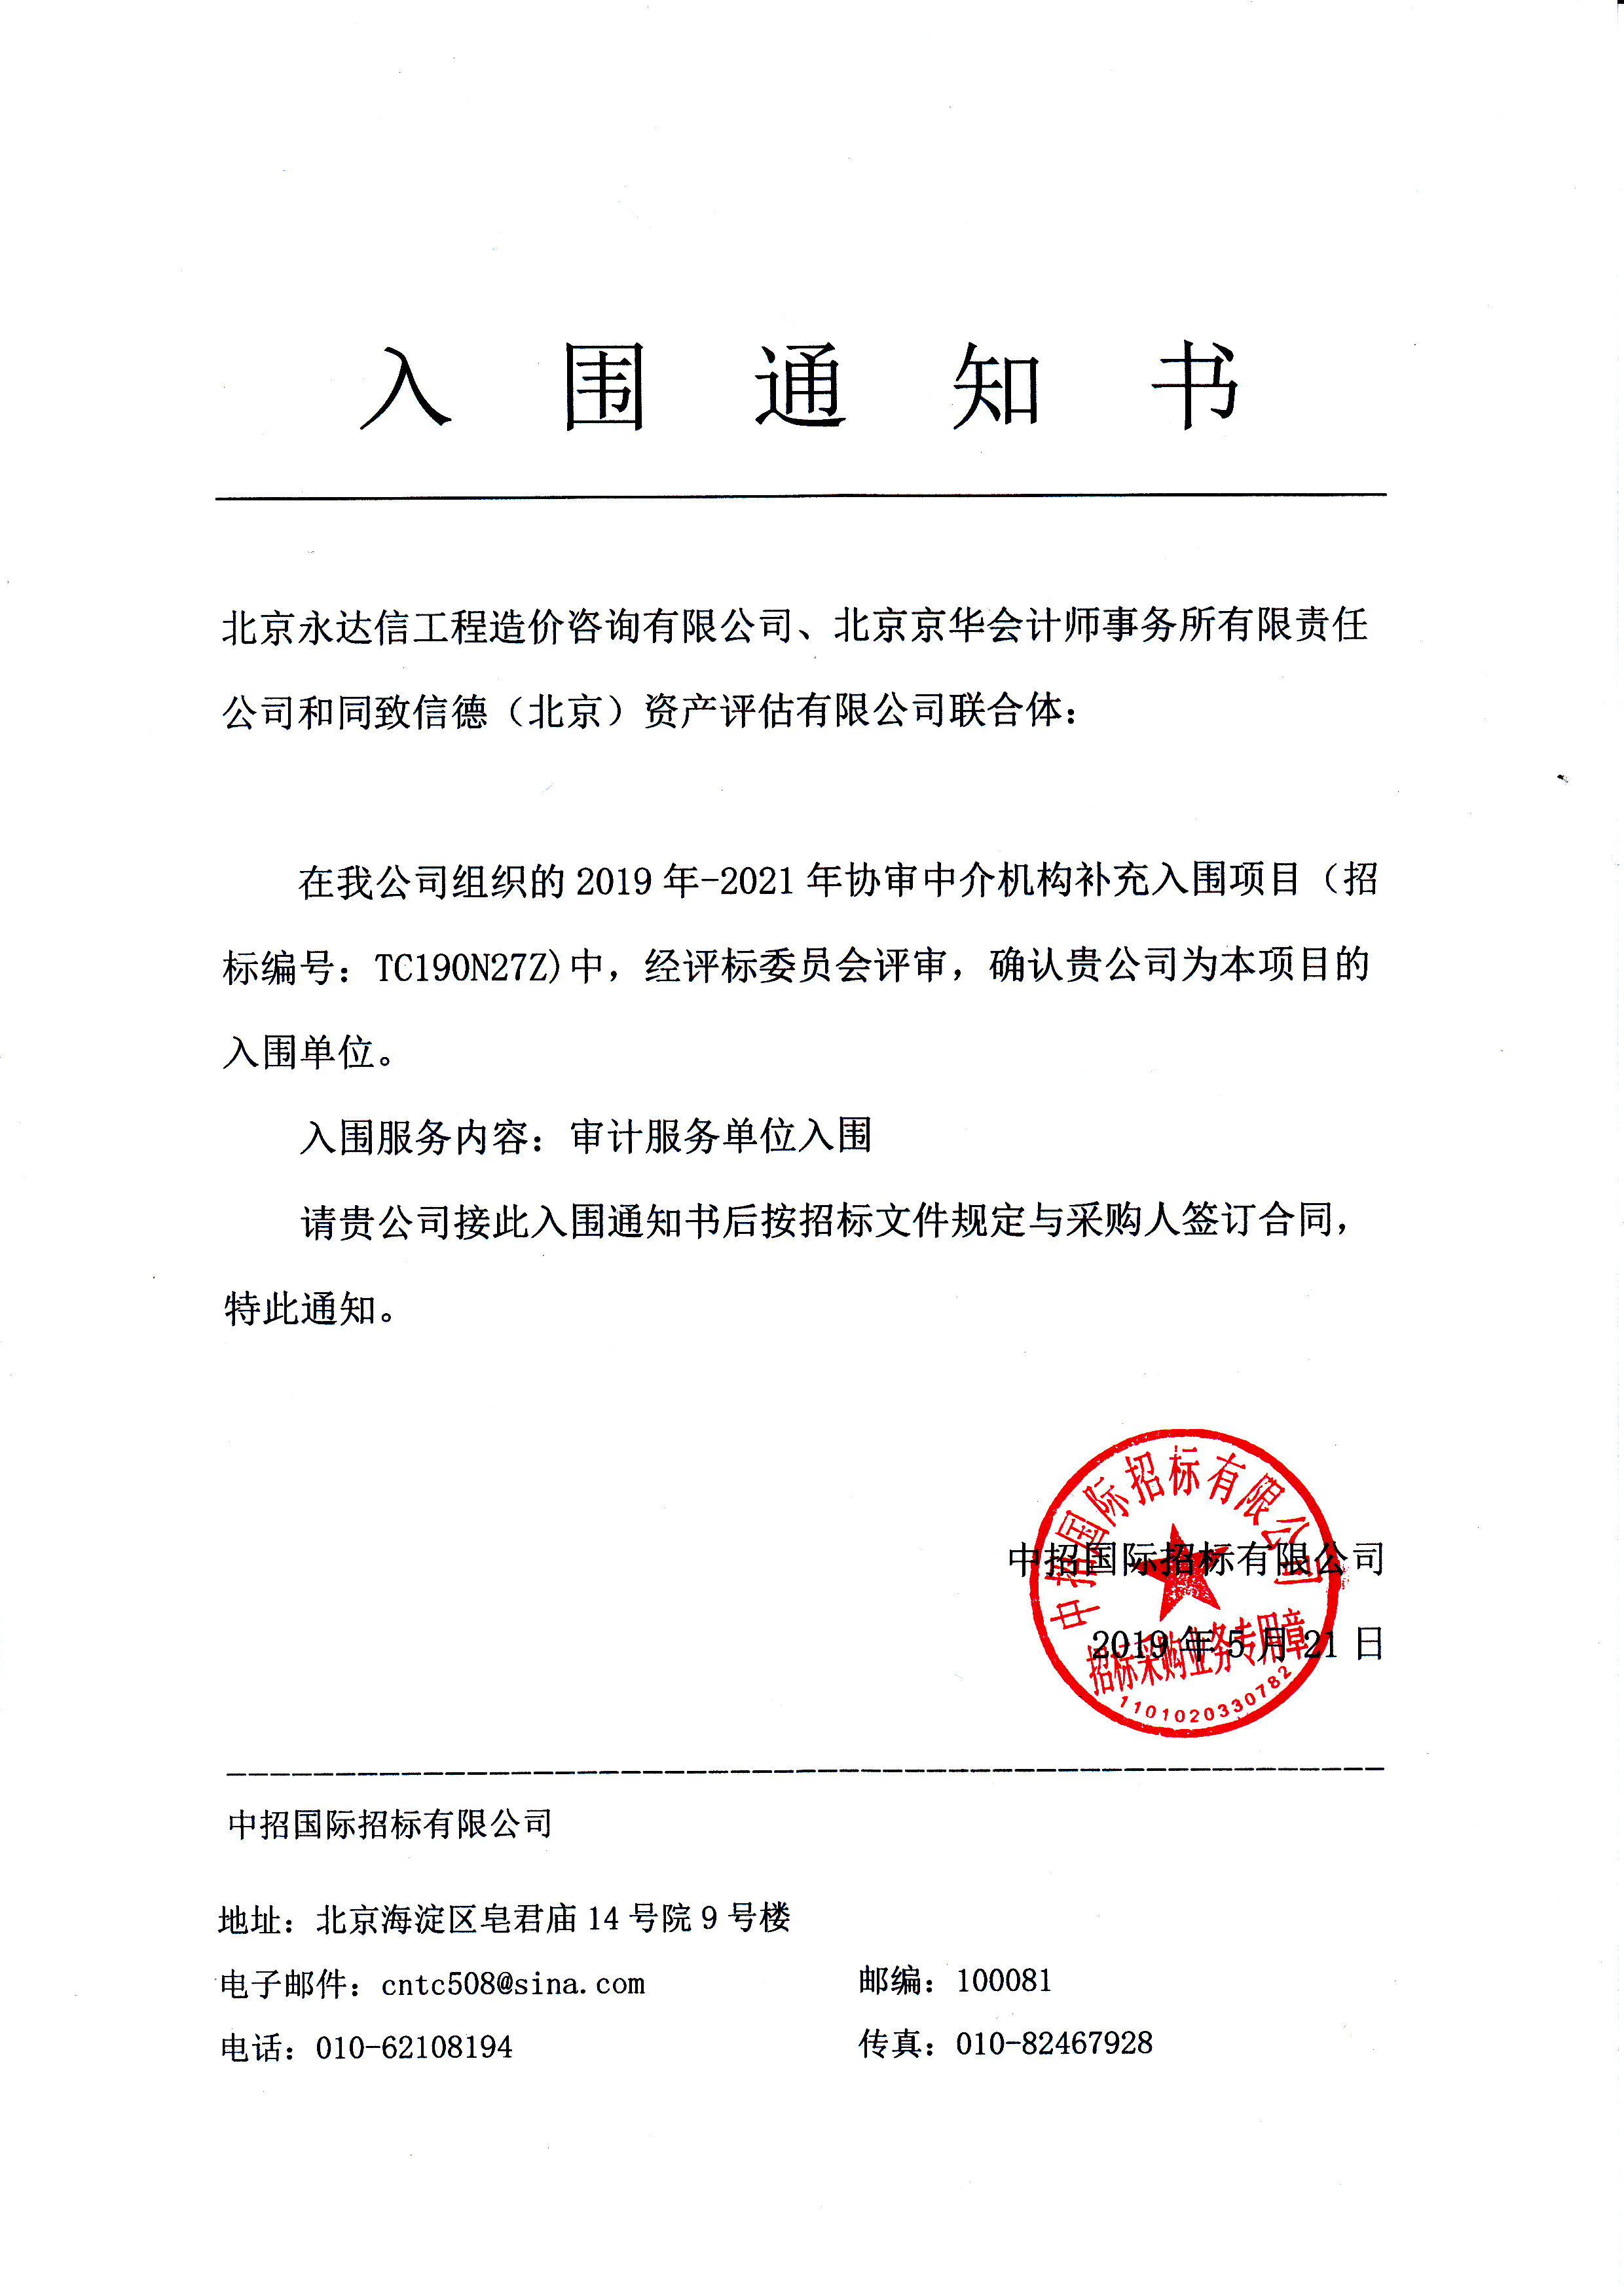 热烈祝贺北京永达信联合体入围北京市通州区审计局2019年-2021年